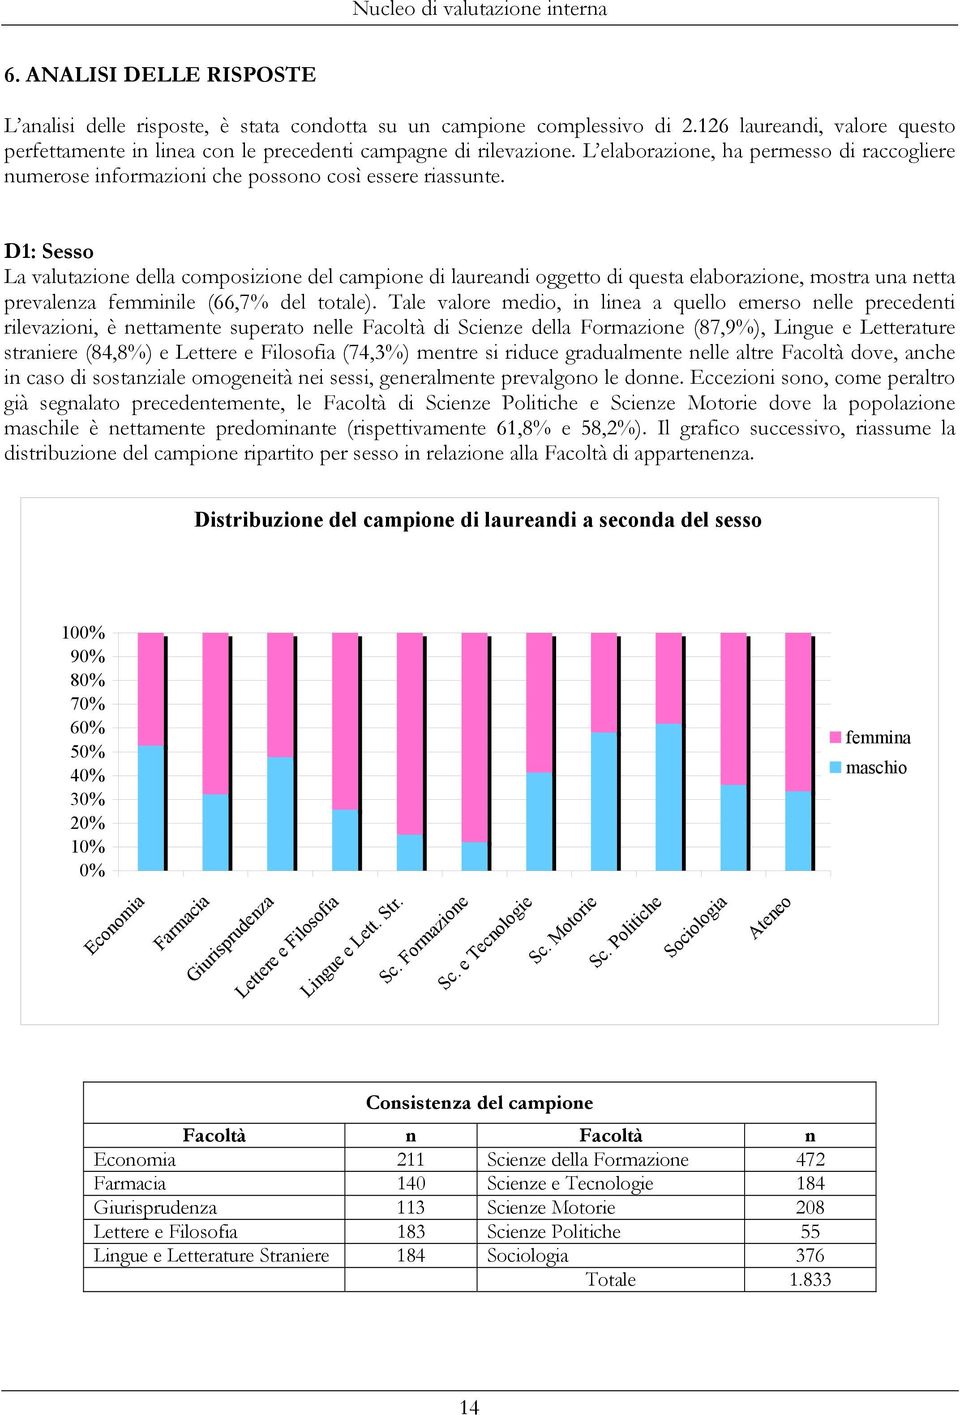 D1: Sesso La valutazione della composizione del campione di laureandi oggetto di questa elaborazione, mostra una netta prevalenza femminile (66,7% del totale).